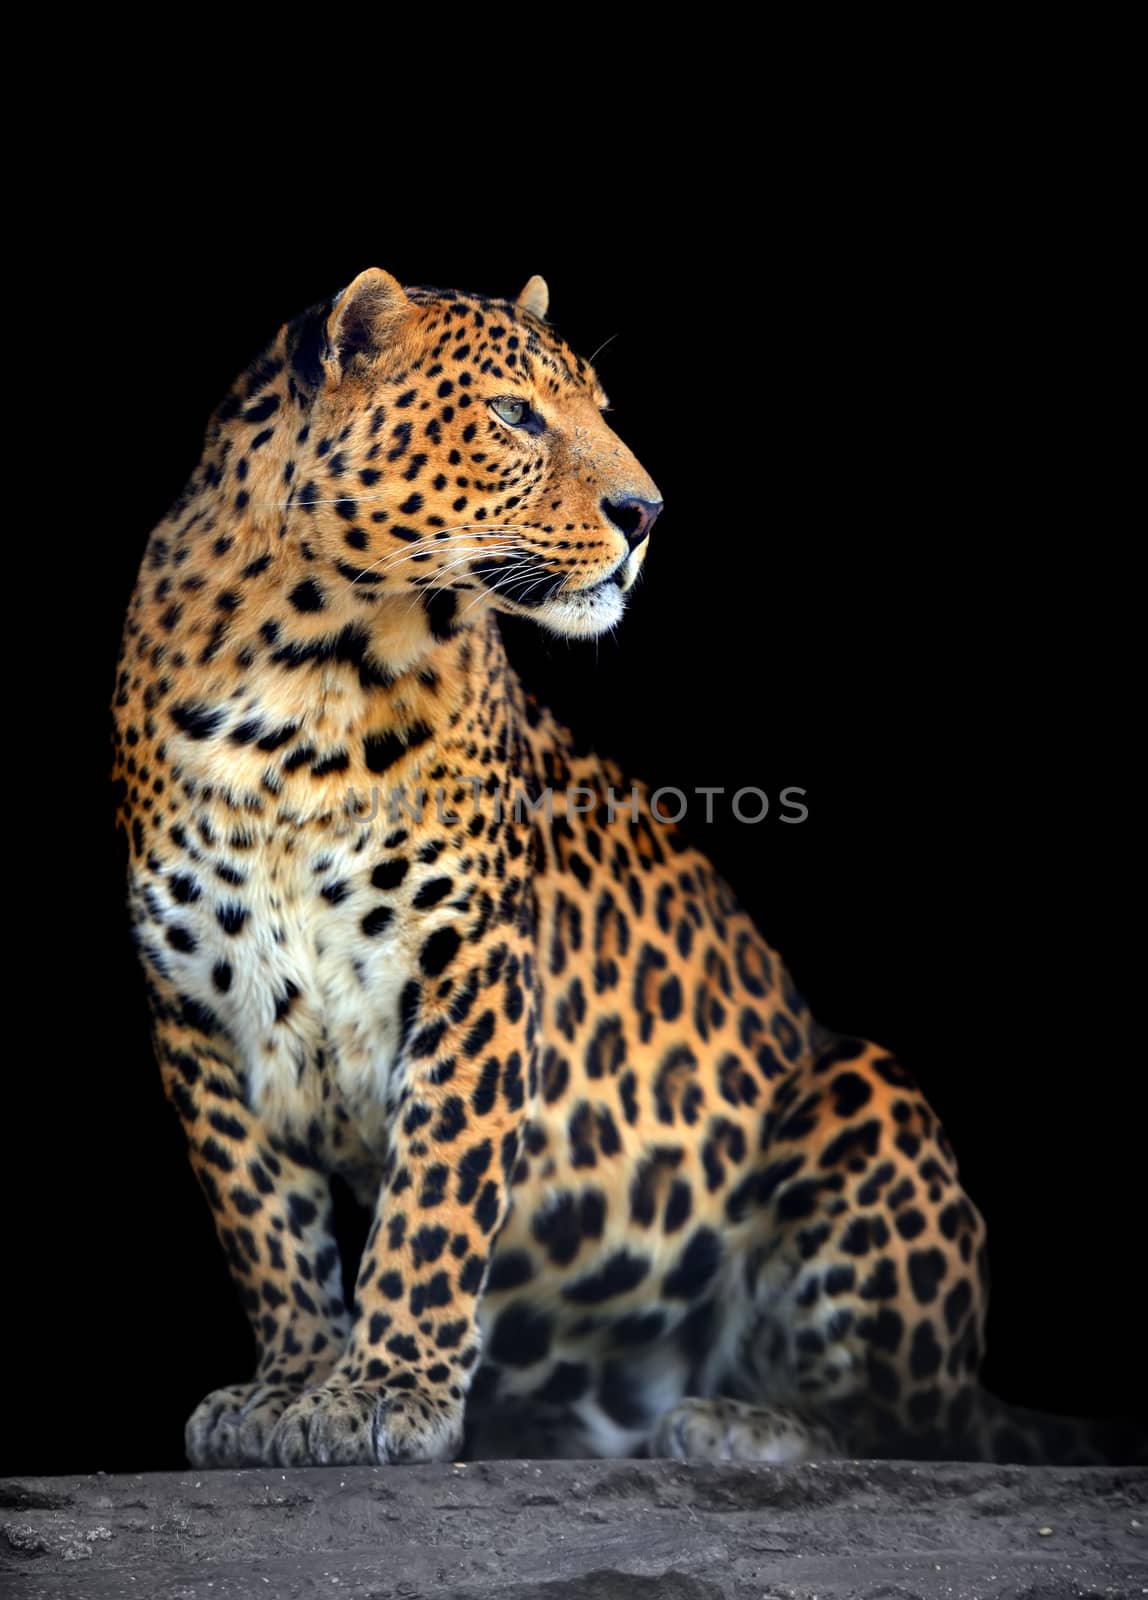 Leopard portrait on dark background by byrdyak